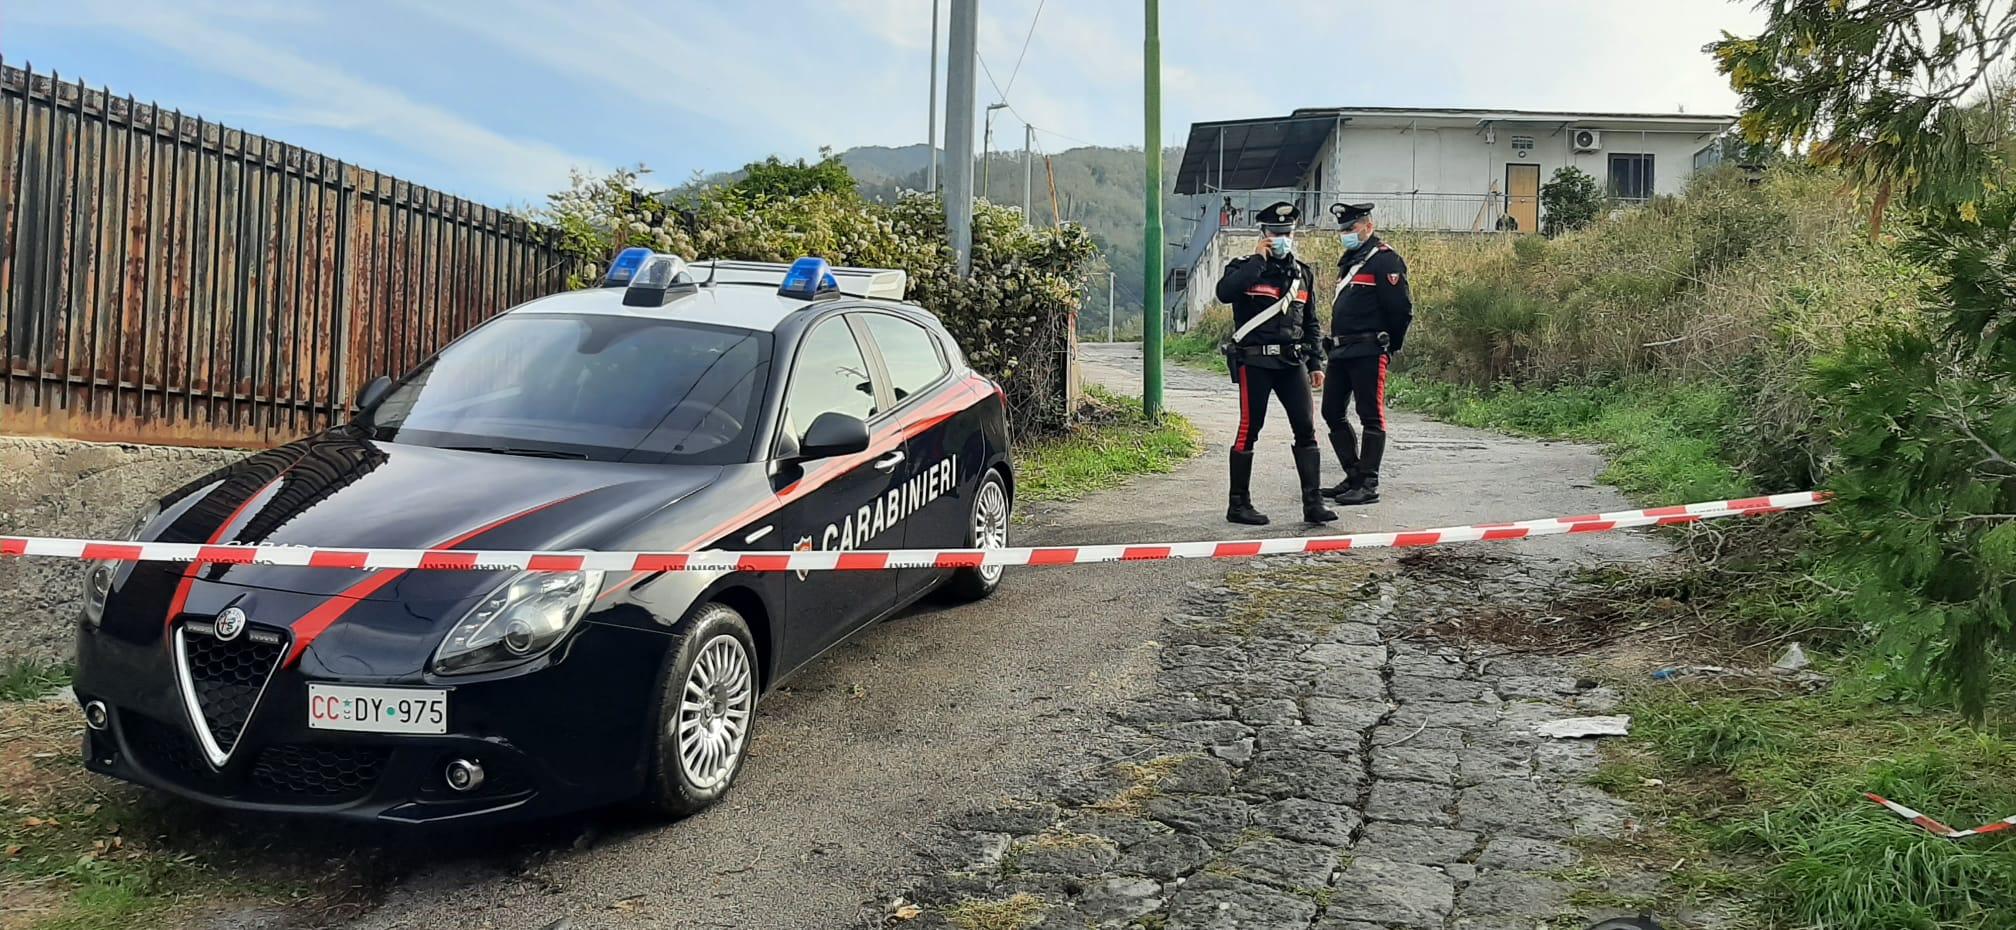 NDODH NË ITALI/ Kërcënoi pronarin e dyqanit me thikë dhe i theu xhamat, por u plagos, shqiptari gjendet i vdekur në makinë